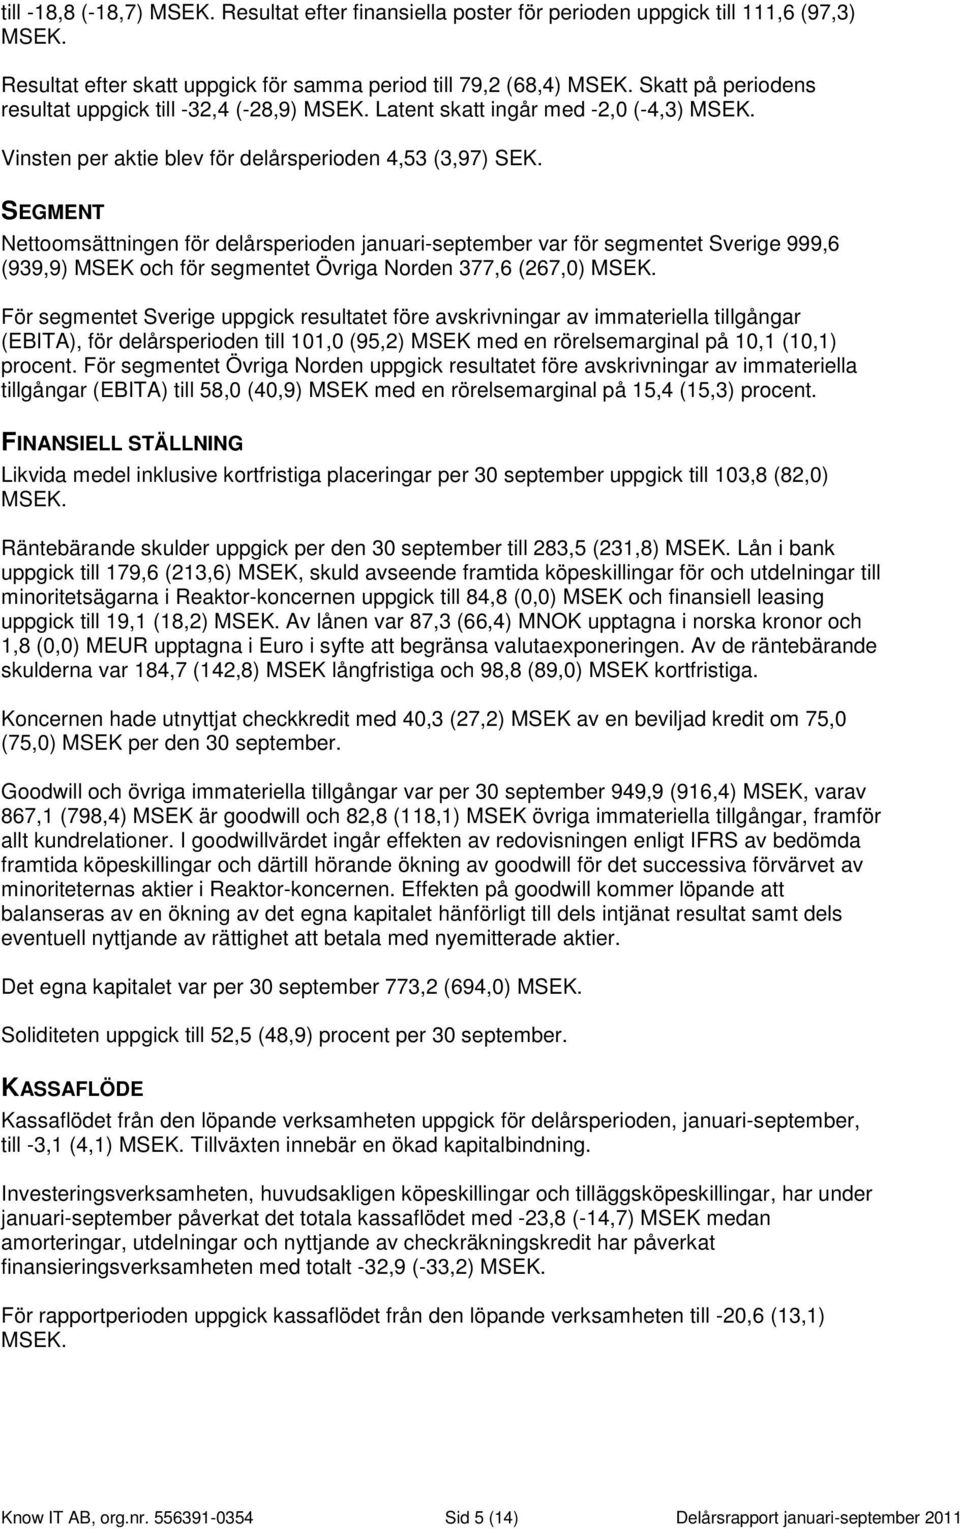 SEGMENT Nettoomsättningen för delårsperioden januari-september var för segmentet Sverige 999,6 (939,9) MSEK och för segmentet Norden 377,6 (267,0) MSEK.